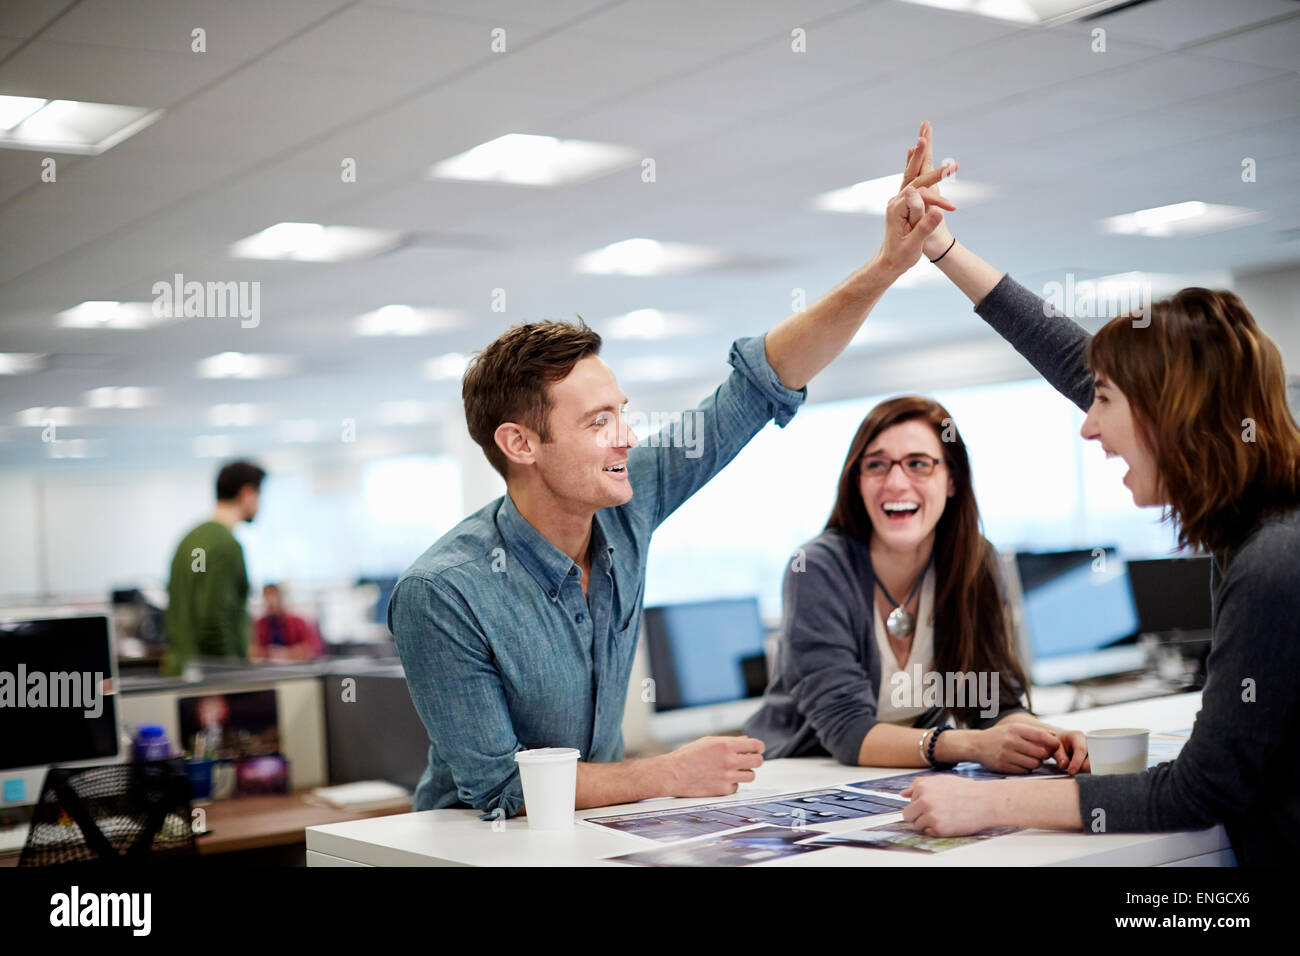 Drei Menschen in einem Büro mit Blick auf Fotografien und eine hohe fünf Geste. Stockfoto